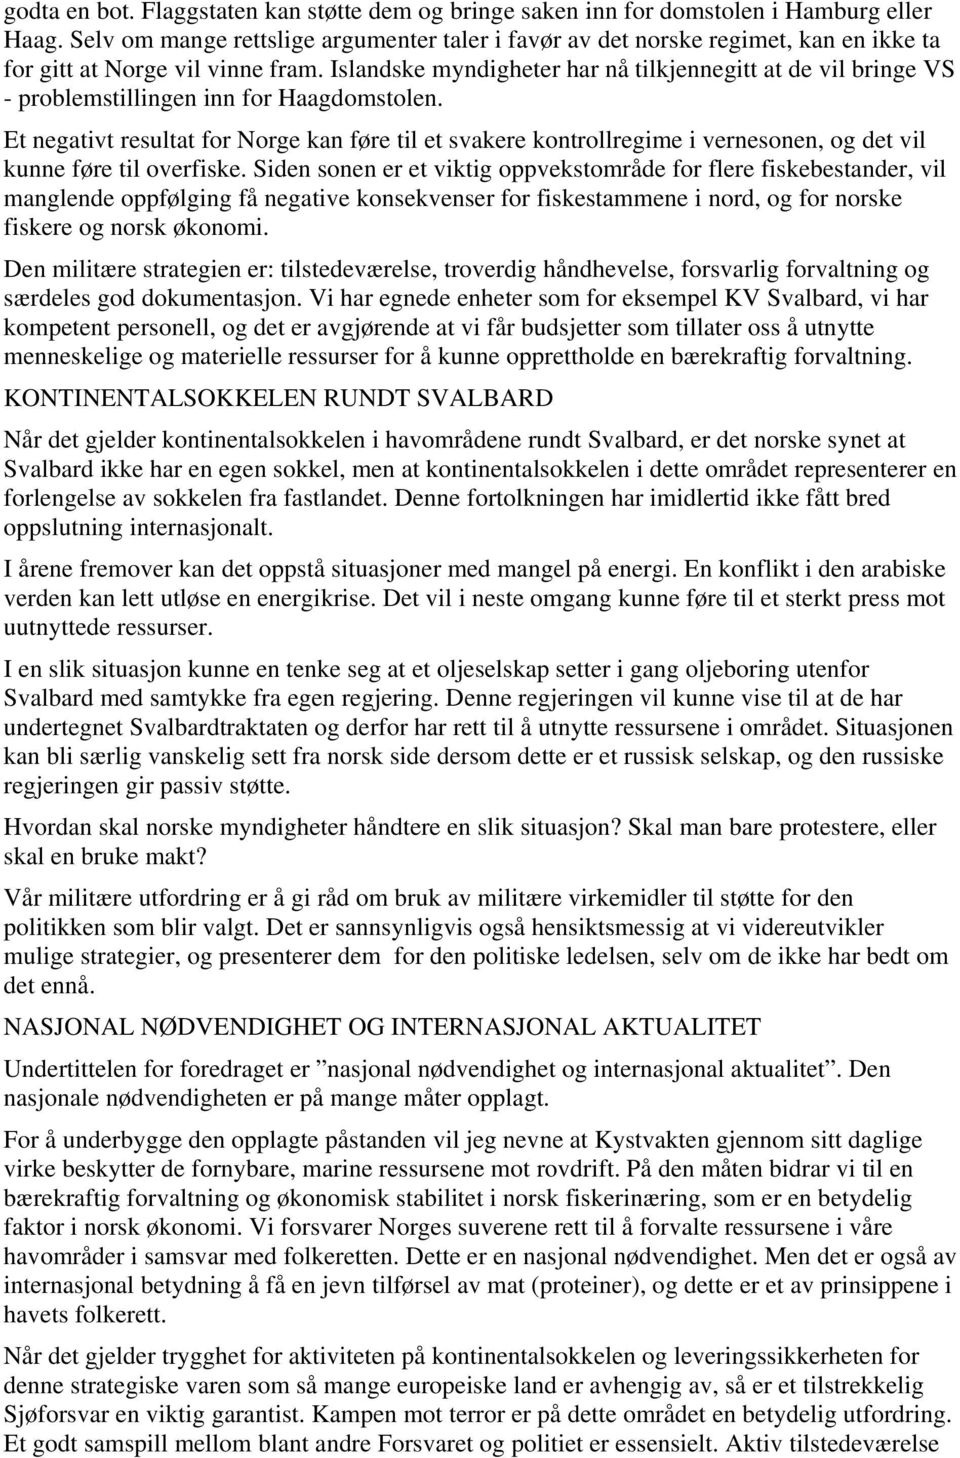 Islandske myndigheter har nå tilkjennegitt at de vil bringe VS - problemstillingen inn for Haagdomstolen.